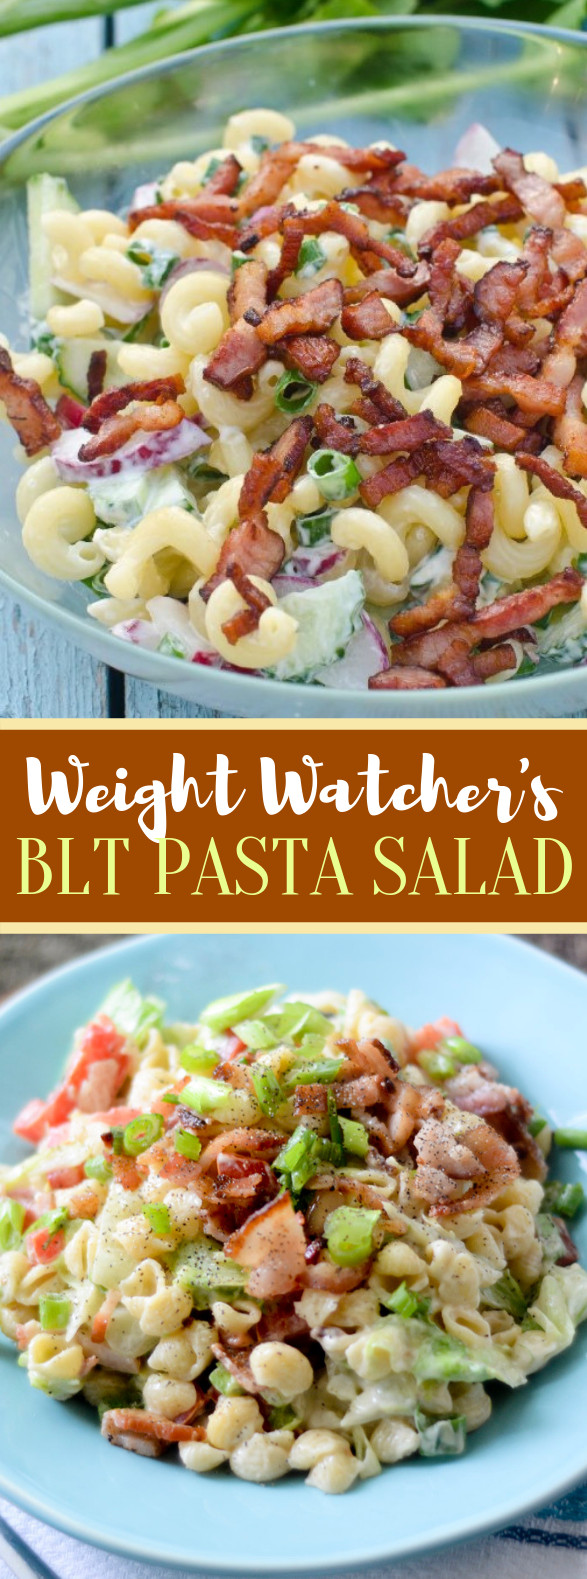 Weight Watchers Blt Pasta Salad
 WEIGHT WATCHER’S BLT PASTA SALAD t summer in 2020